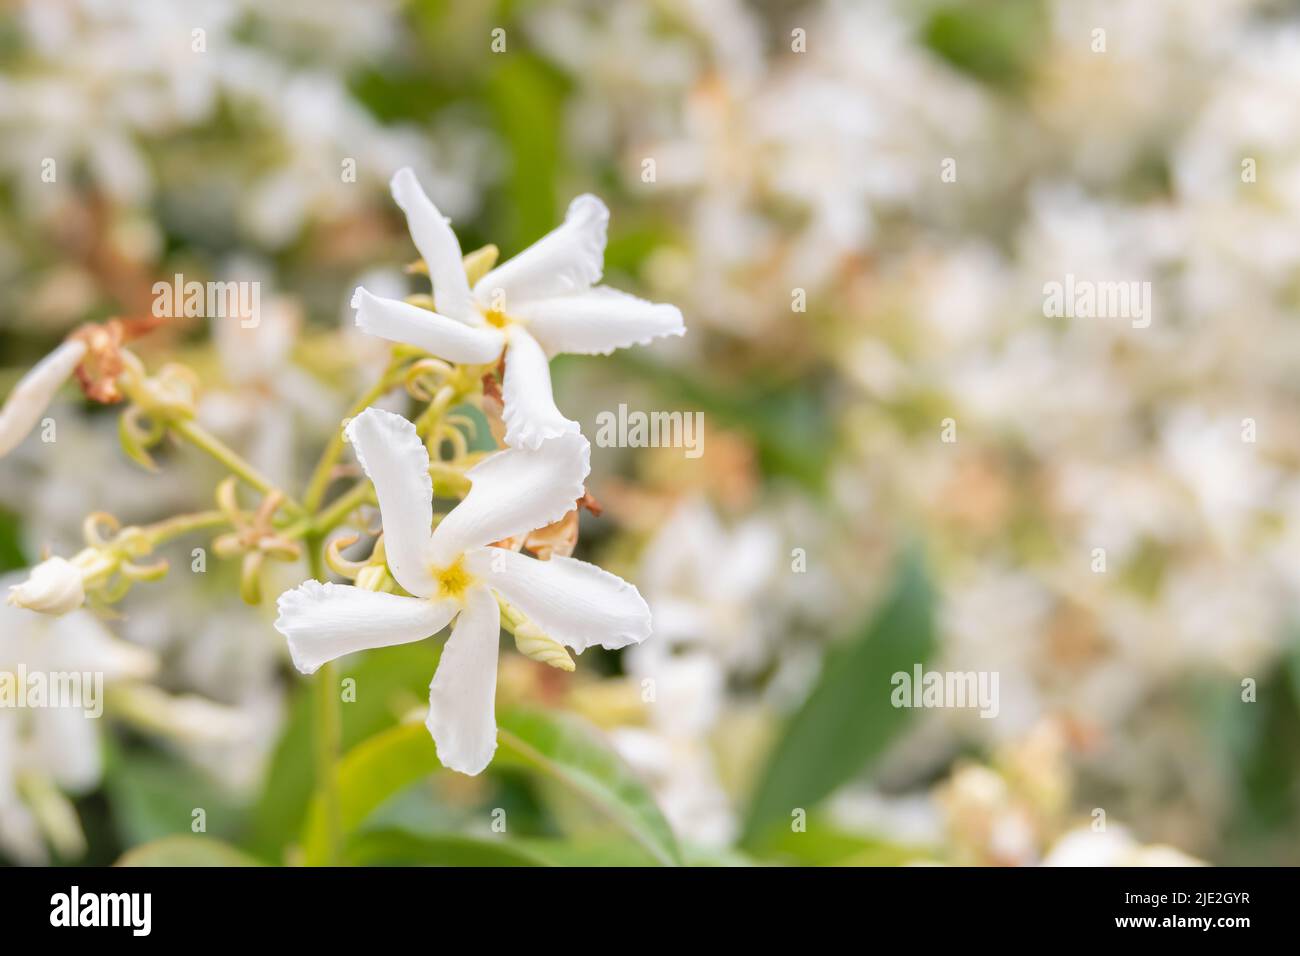 star jasmine flower on blur background trachelospermum jasminoides Stock Photo